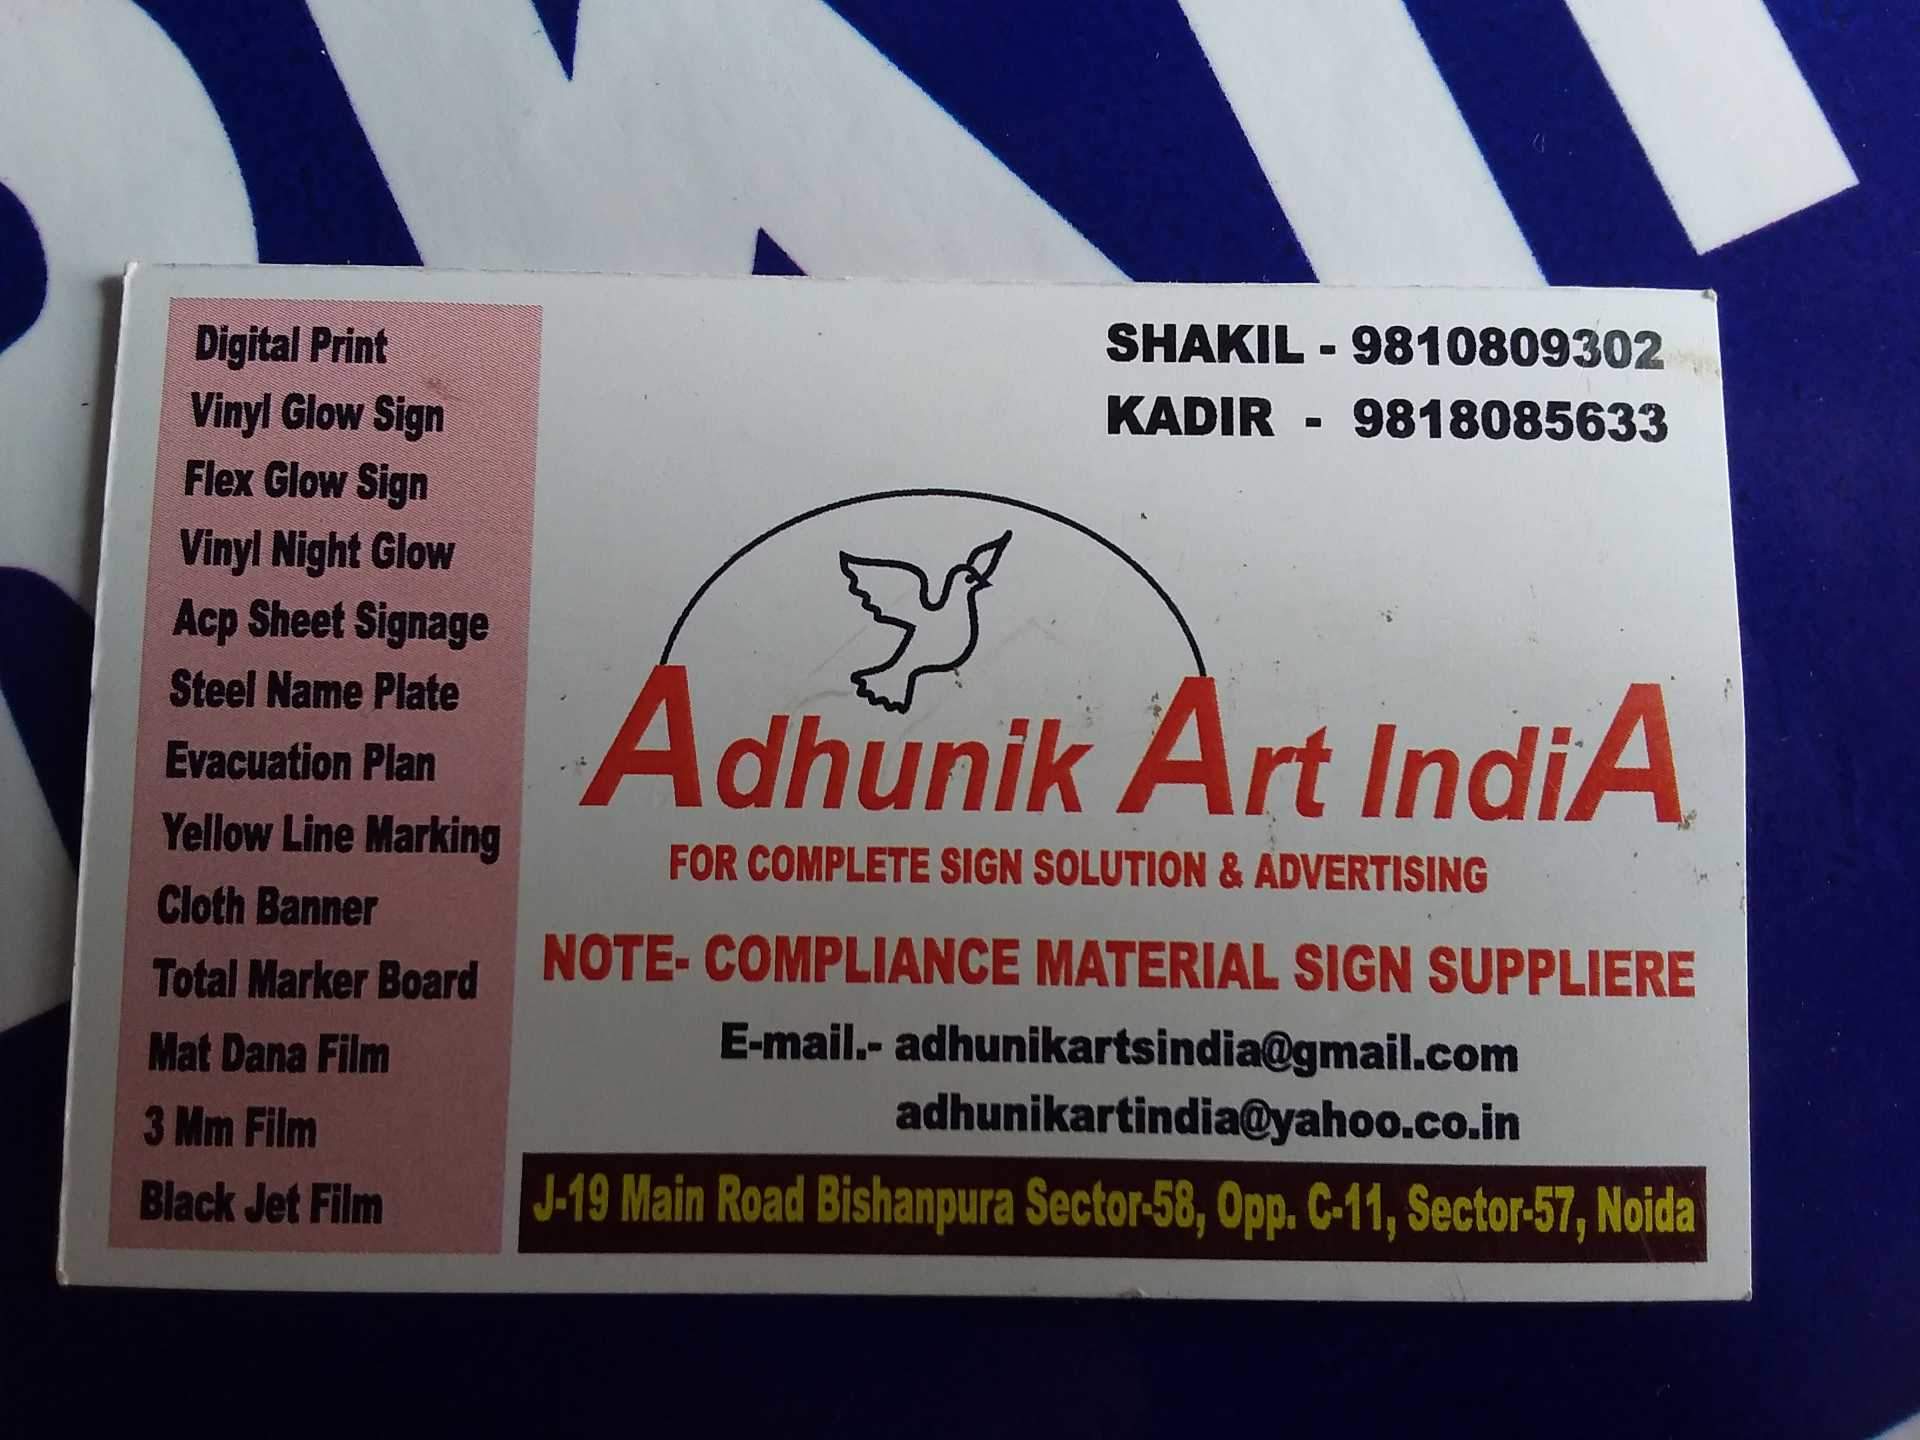 Adhunik Art India Photos, Sector 58, Delhi - Label , HD Wallpaper & Backgrounds